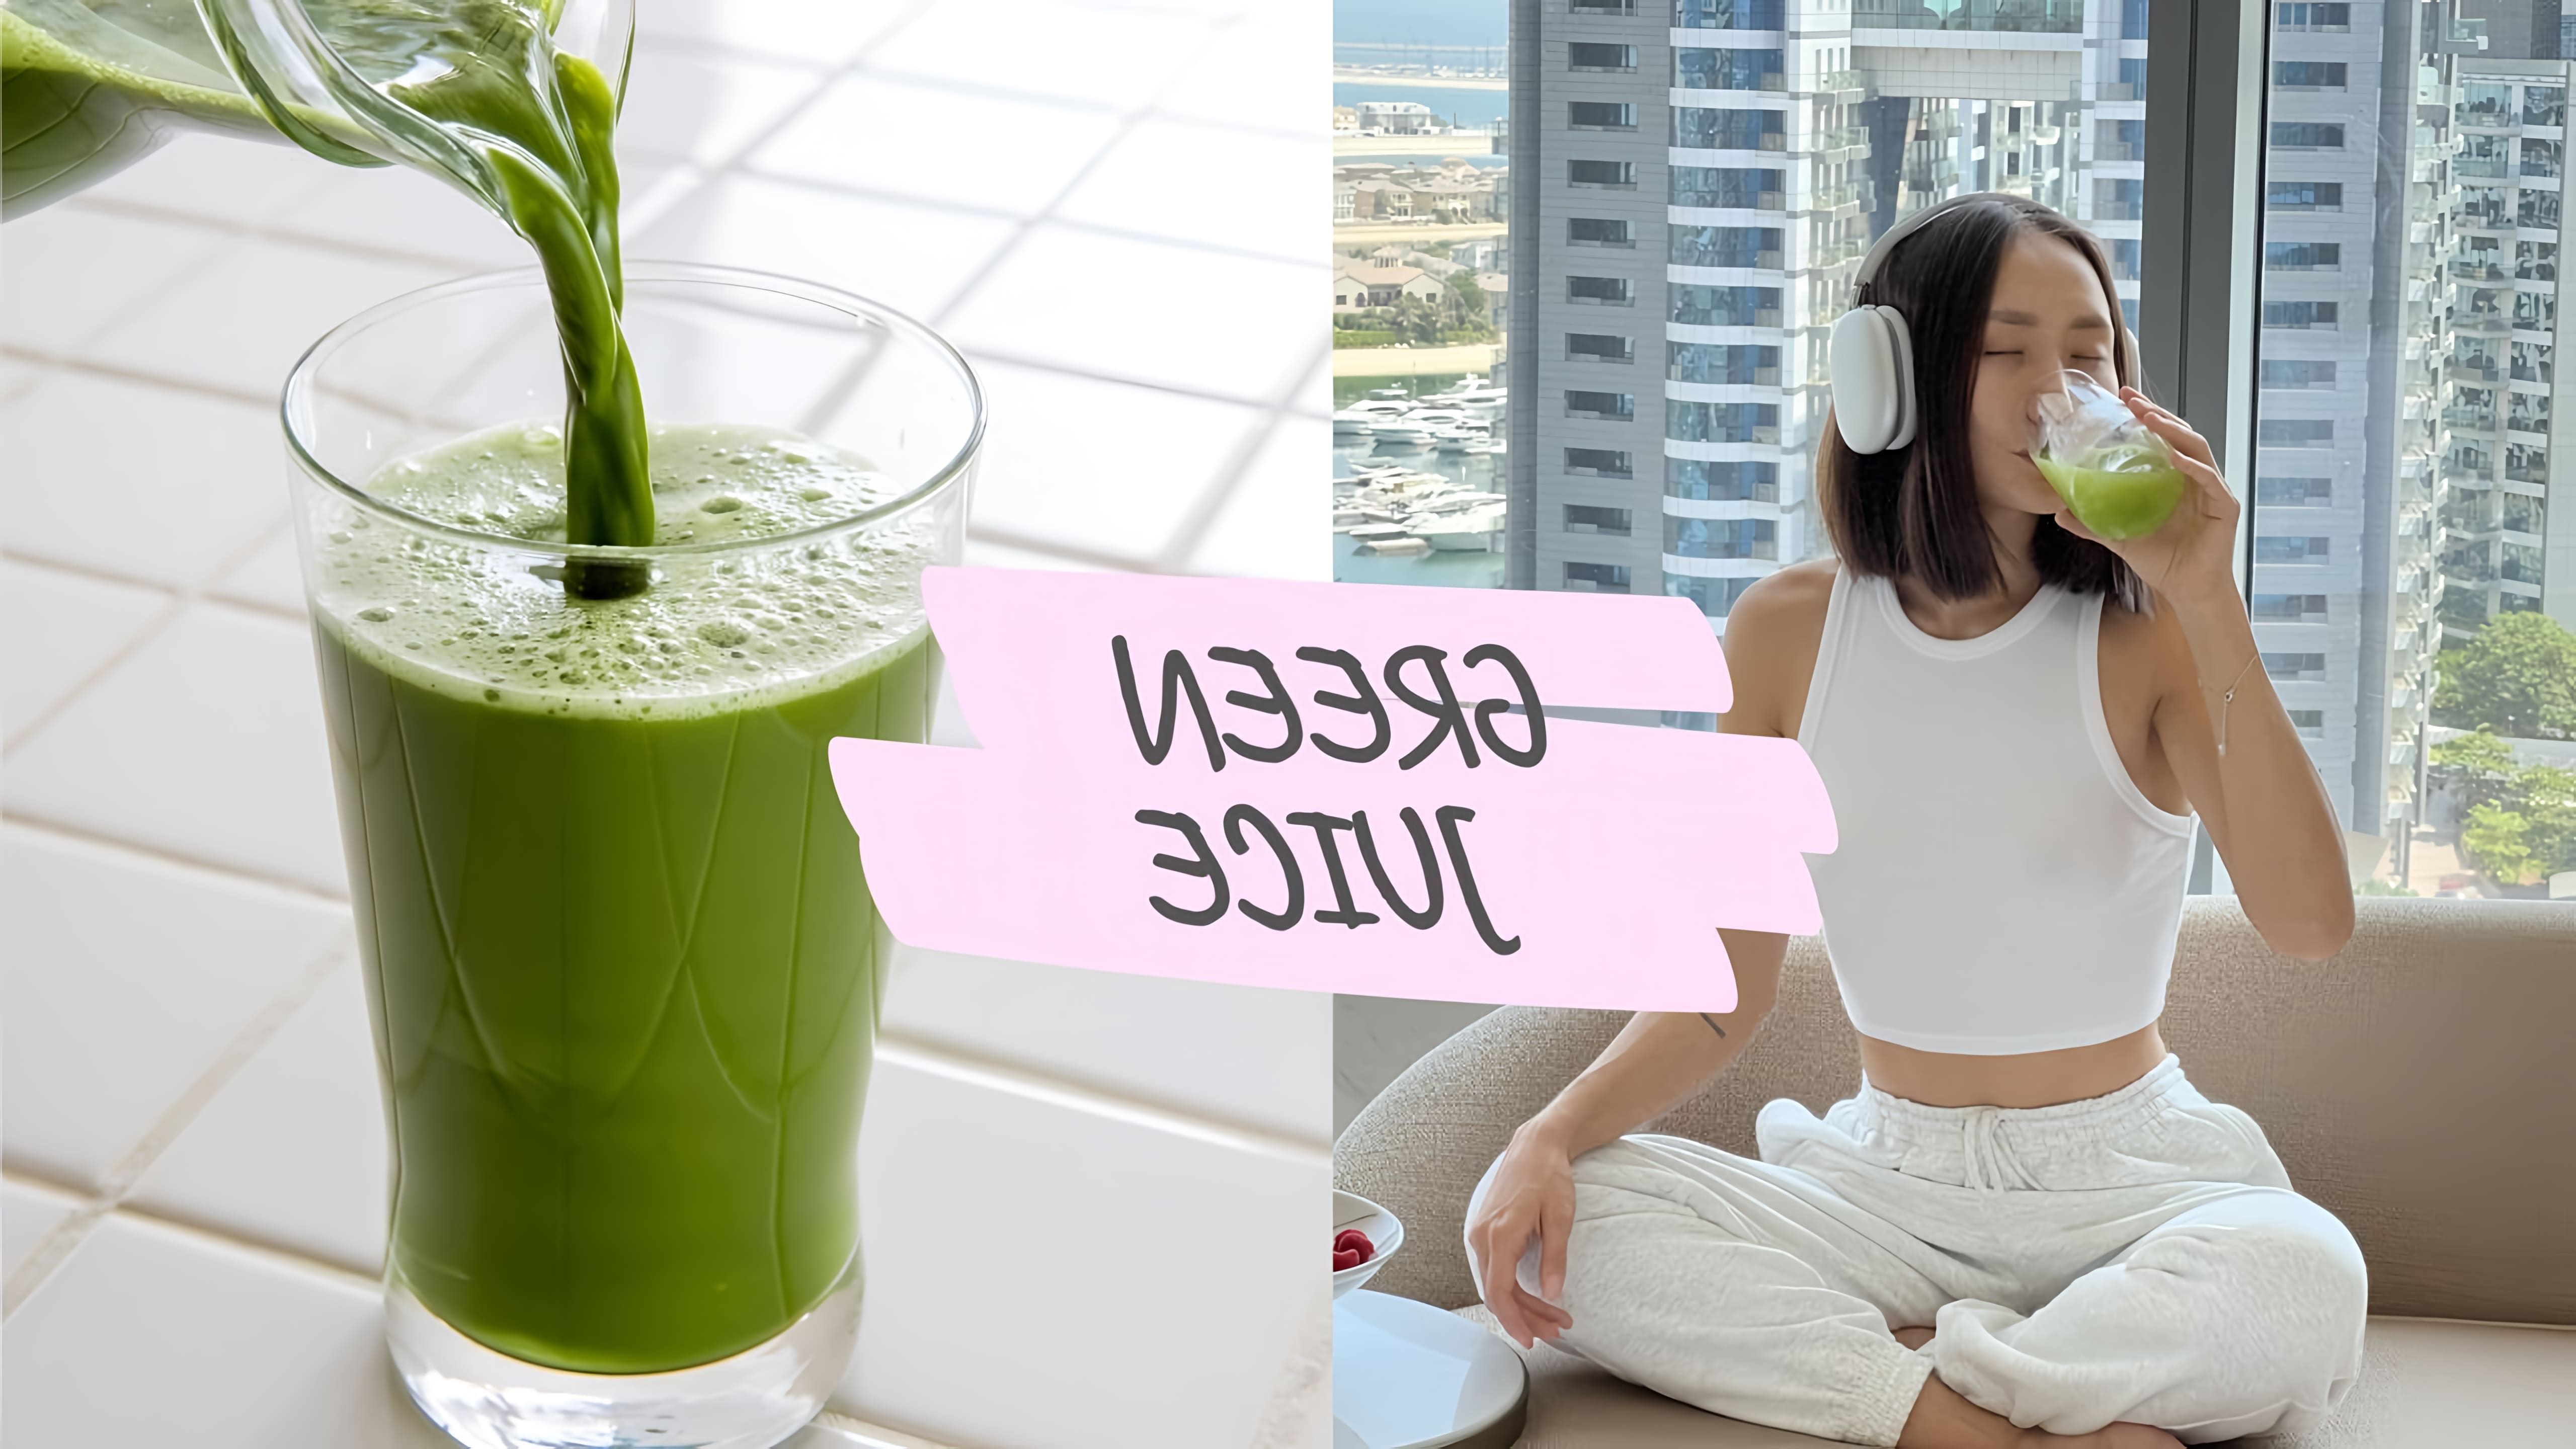 В данном видео девушка рассказывает о пользе зеленого сока, его влиянии на здоровье и кожу